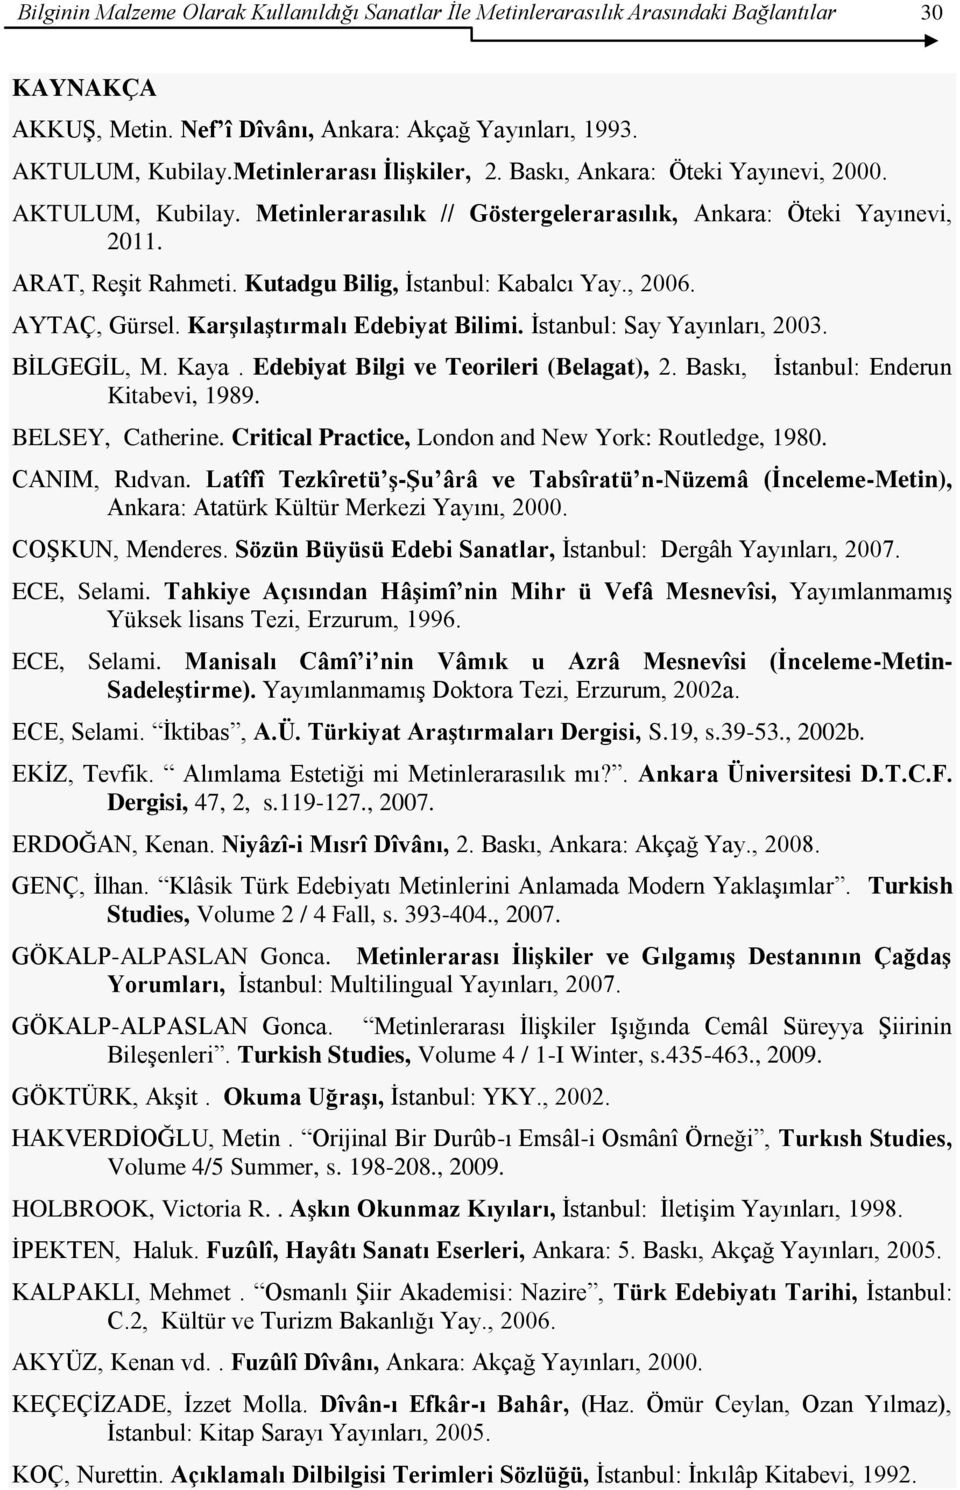 Kutadgu Bilig, Ġstanbul: Kabalcı Yay., 2006. AYTAÇ, Gürsel. KarĢılaĢtırmalı Edebiyat Bilimi. Ġstanbul: Say Yayınları, 2003. BĠLGEGĠL, M. Kaya. Edebiyat Bilgi ve Teorileri (Belagat), 2.